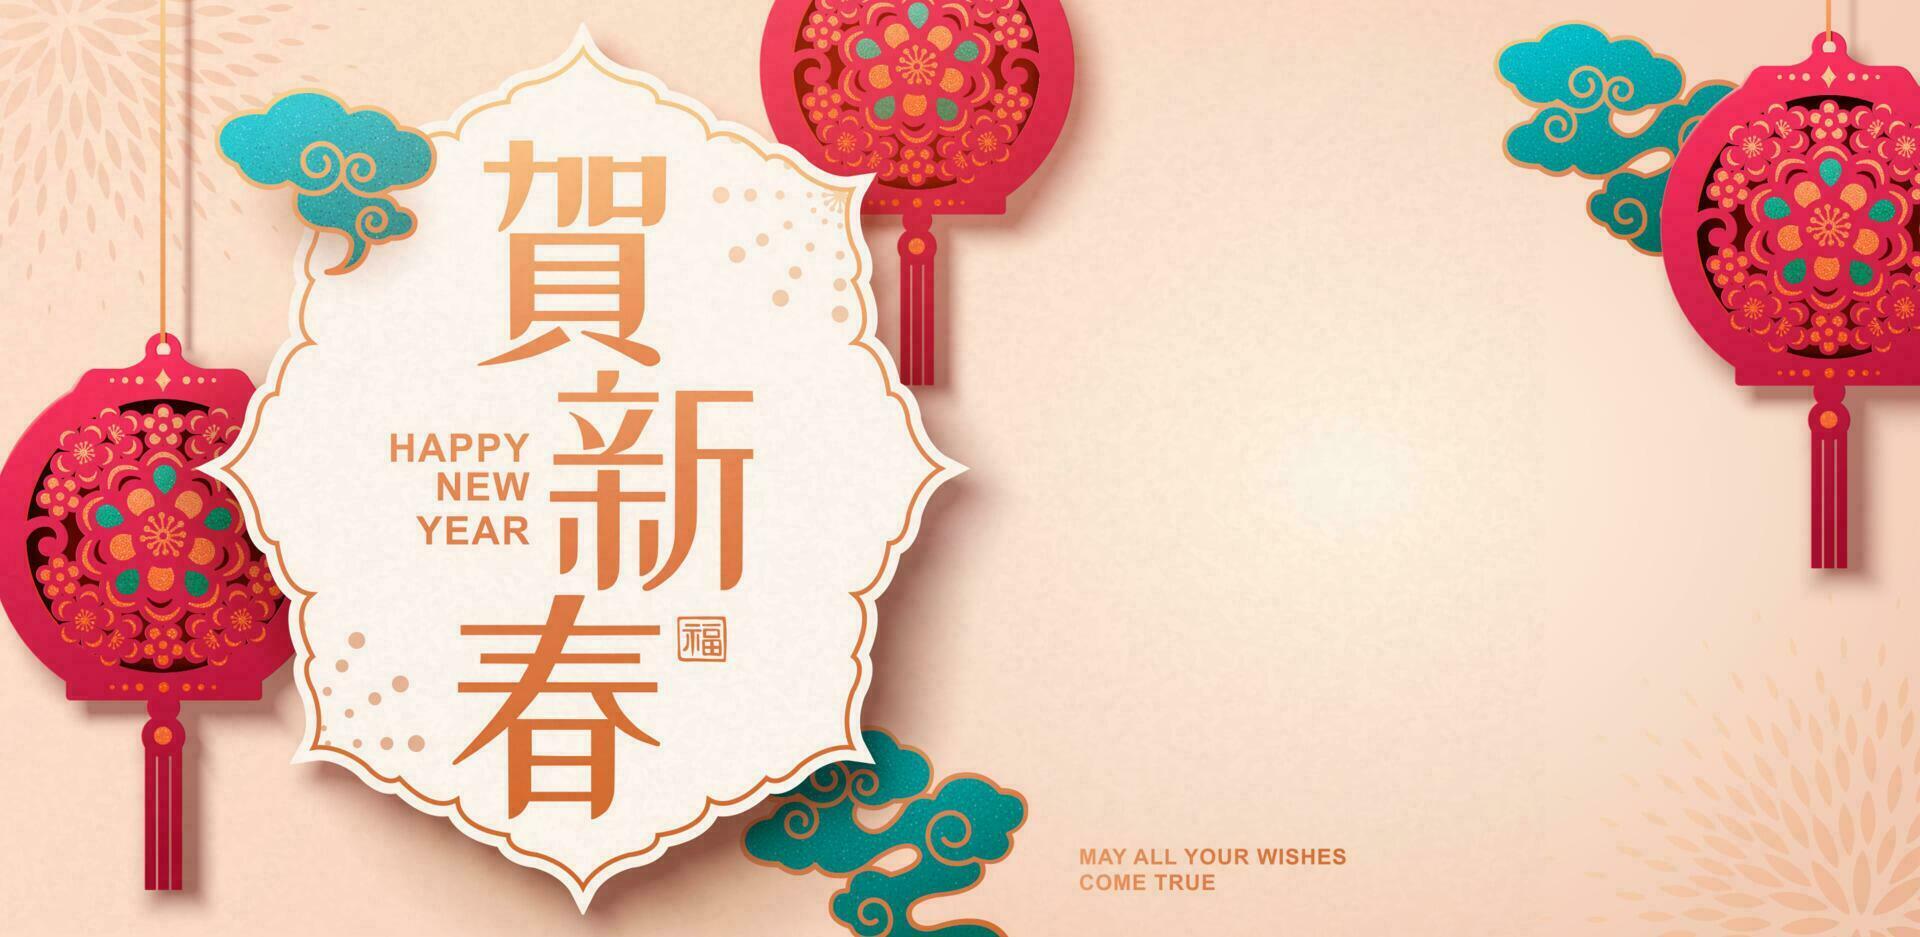 gelukkig maan- jaar papier snijdend stijl banier ontwerp met fuchsia roze bloemen hangende lantaarns en turkoois wolken Aan beige achtergrond, fortuin en gelukkig nieuw jaar geschreven in Chinese woorden vector